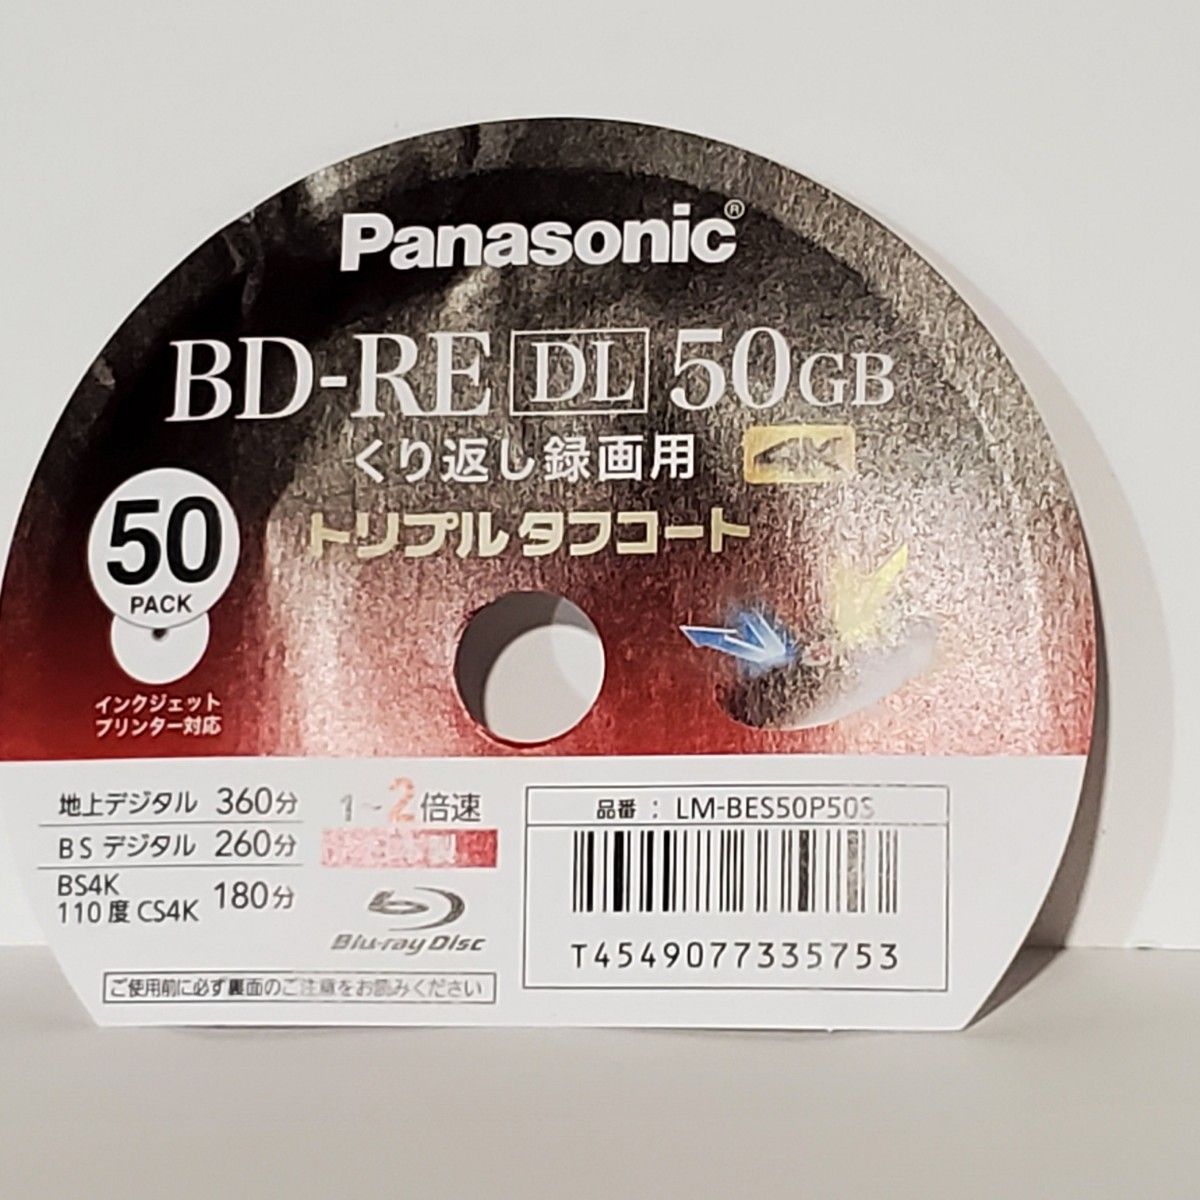 パナソニック 録画用2倍速ブルーレイ片面2層50GB(書換型) 50枚